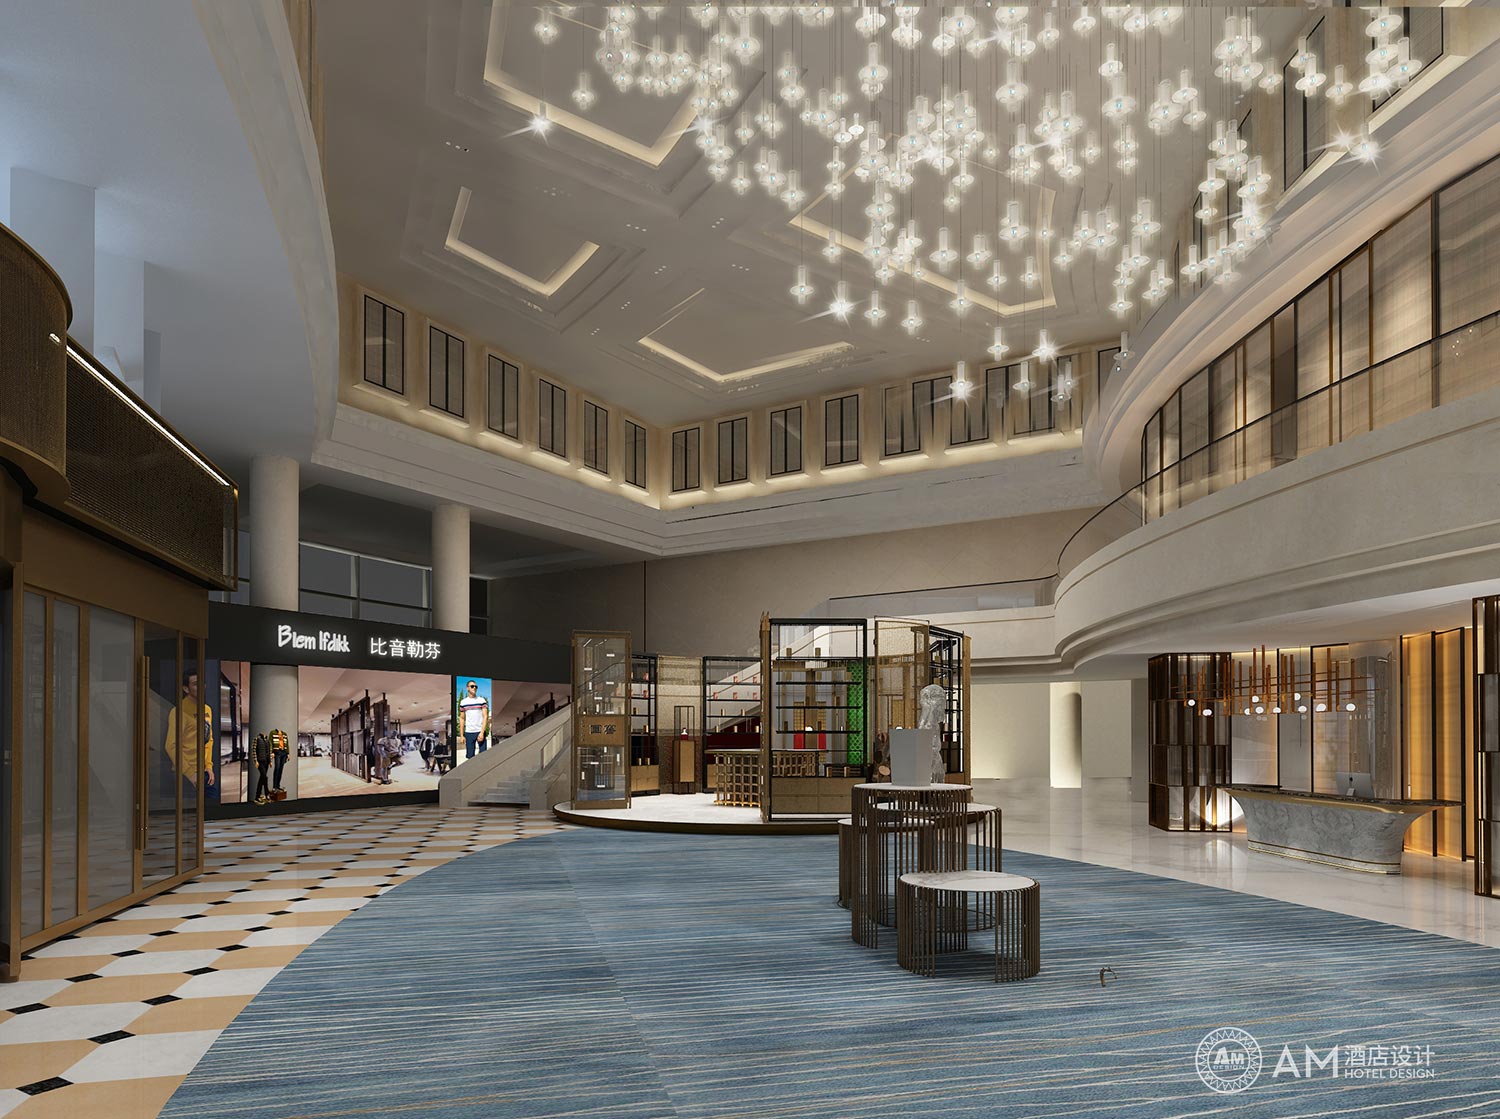 AM DESIGN | Lobby design of Cangzhou Bohai Hotel